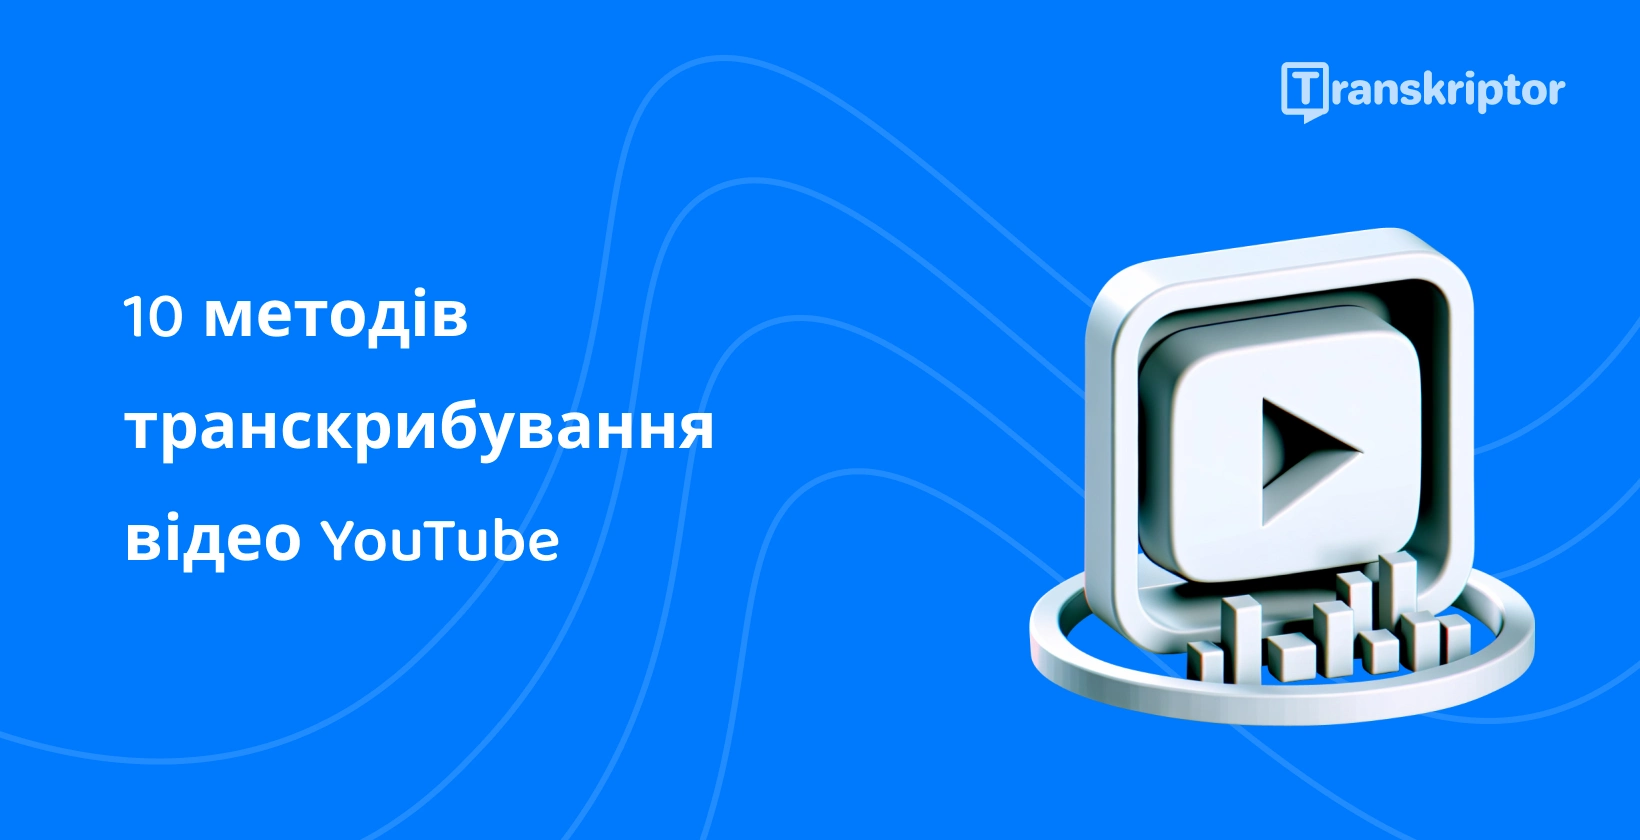 Кнопка відтворення та транскрипція, візуальна ілюстрація методів ефективної транскрибування YouTube відео.